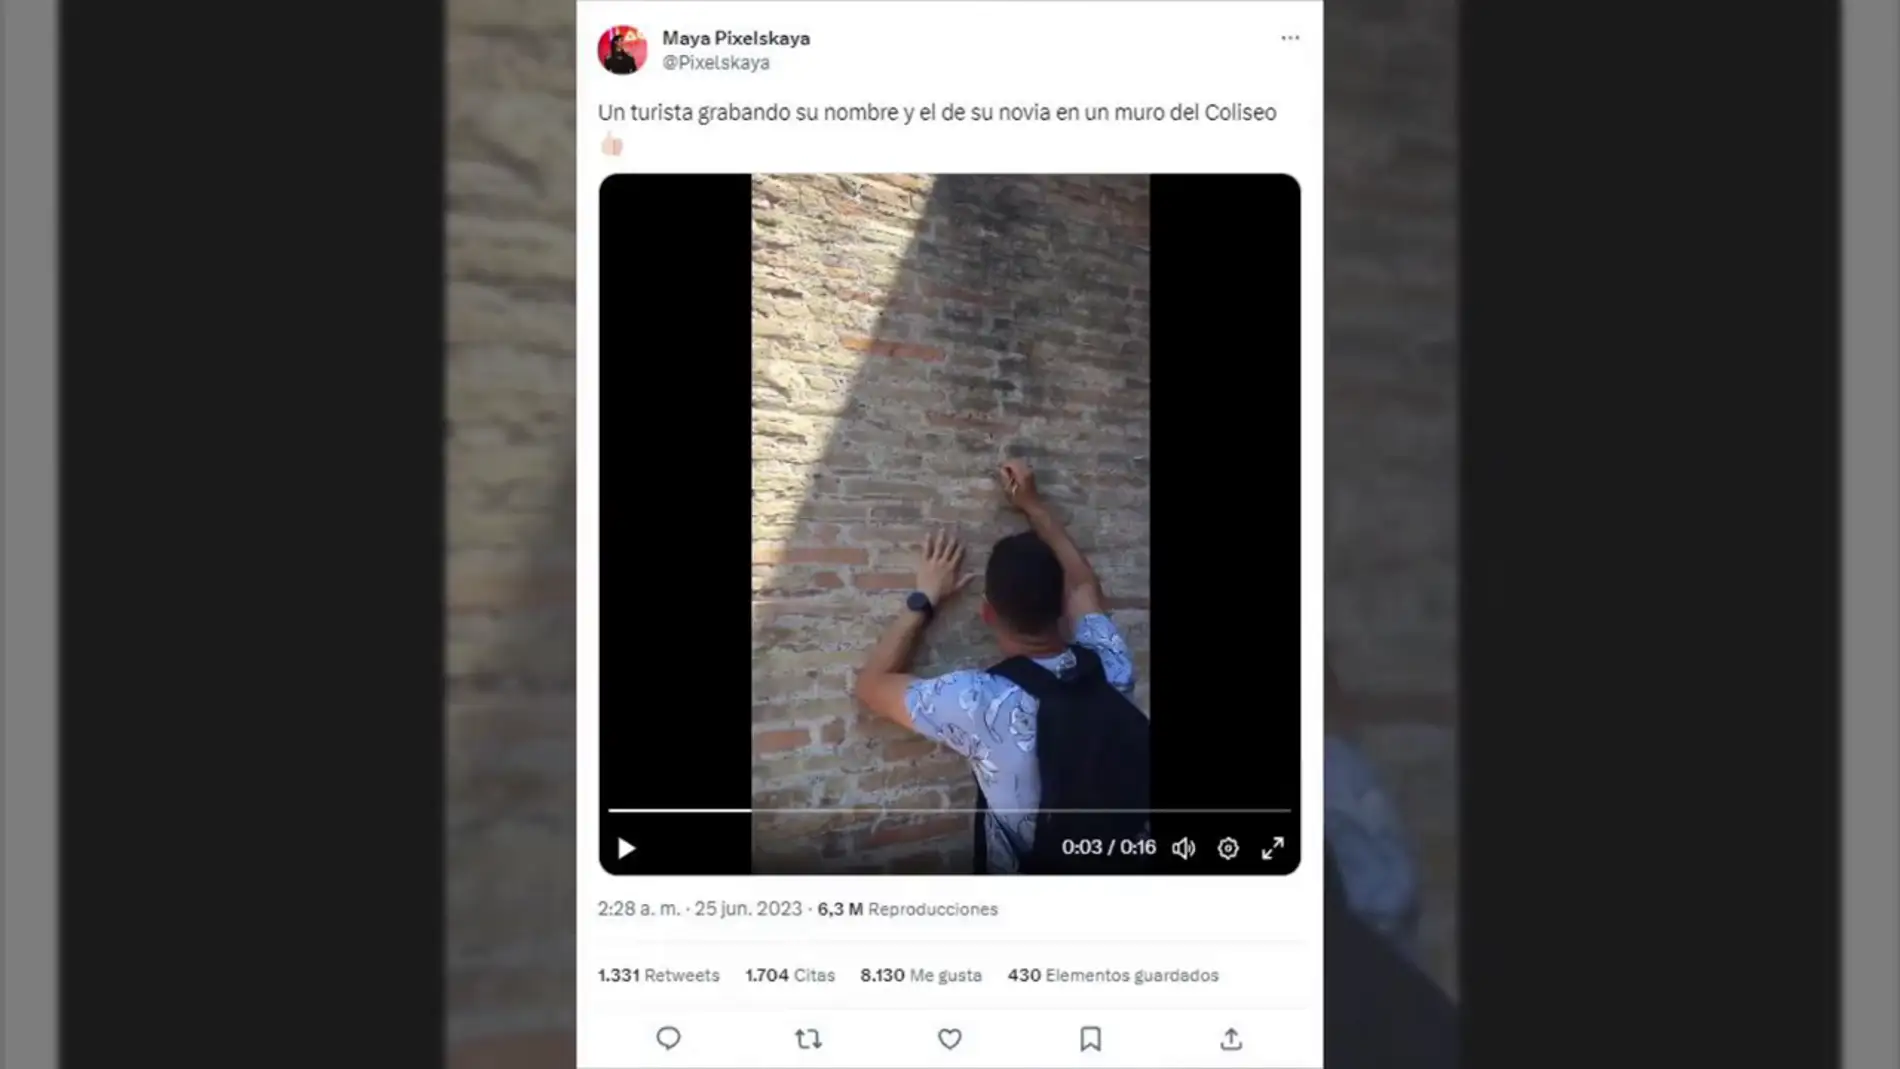 Pillan a un turista y su novia grabando su nombre en un muro del Coliseo romano